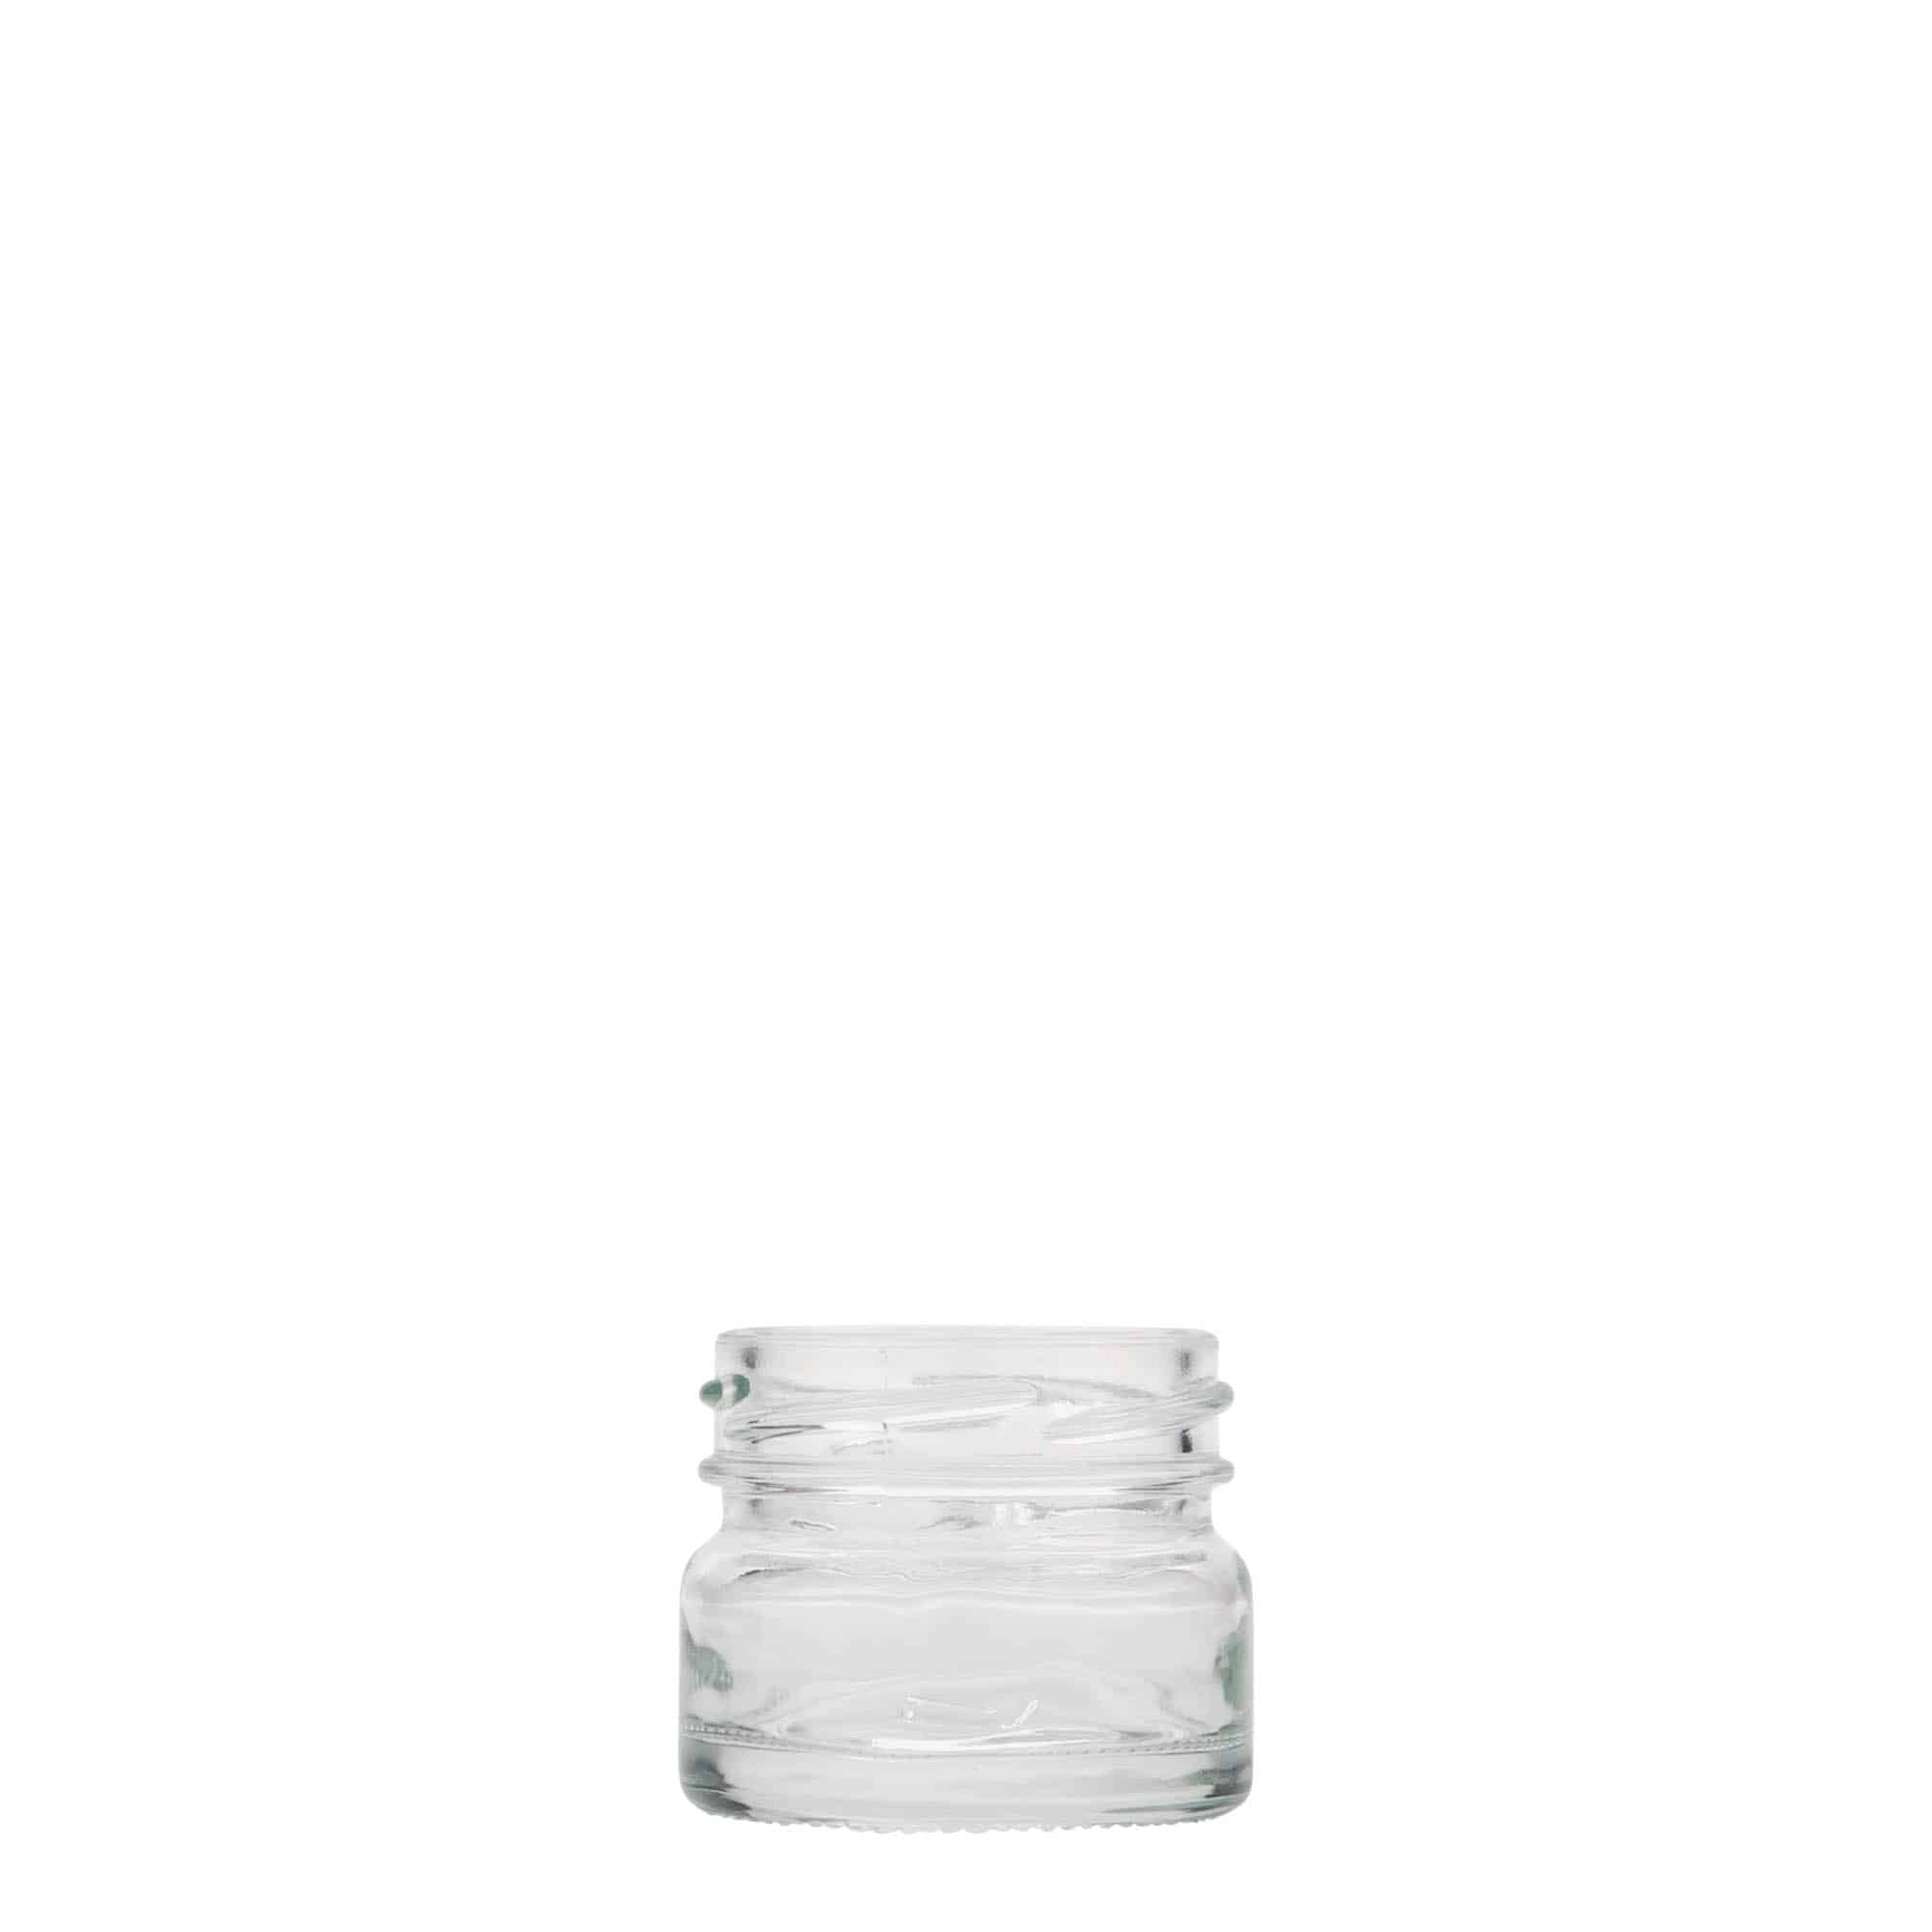 30 ml short round jar, closure: twist off (TO 43)